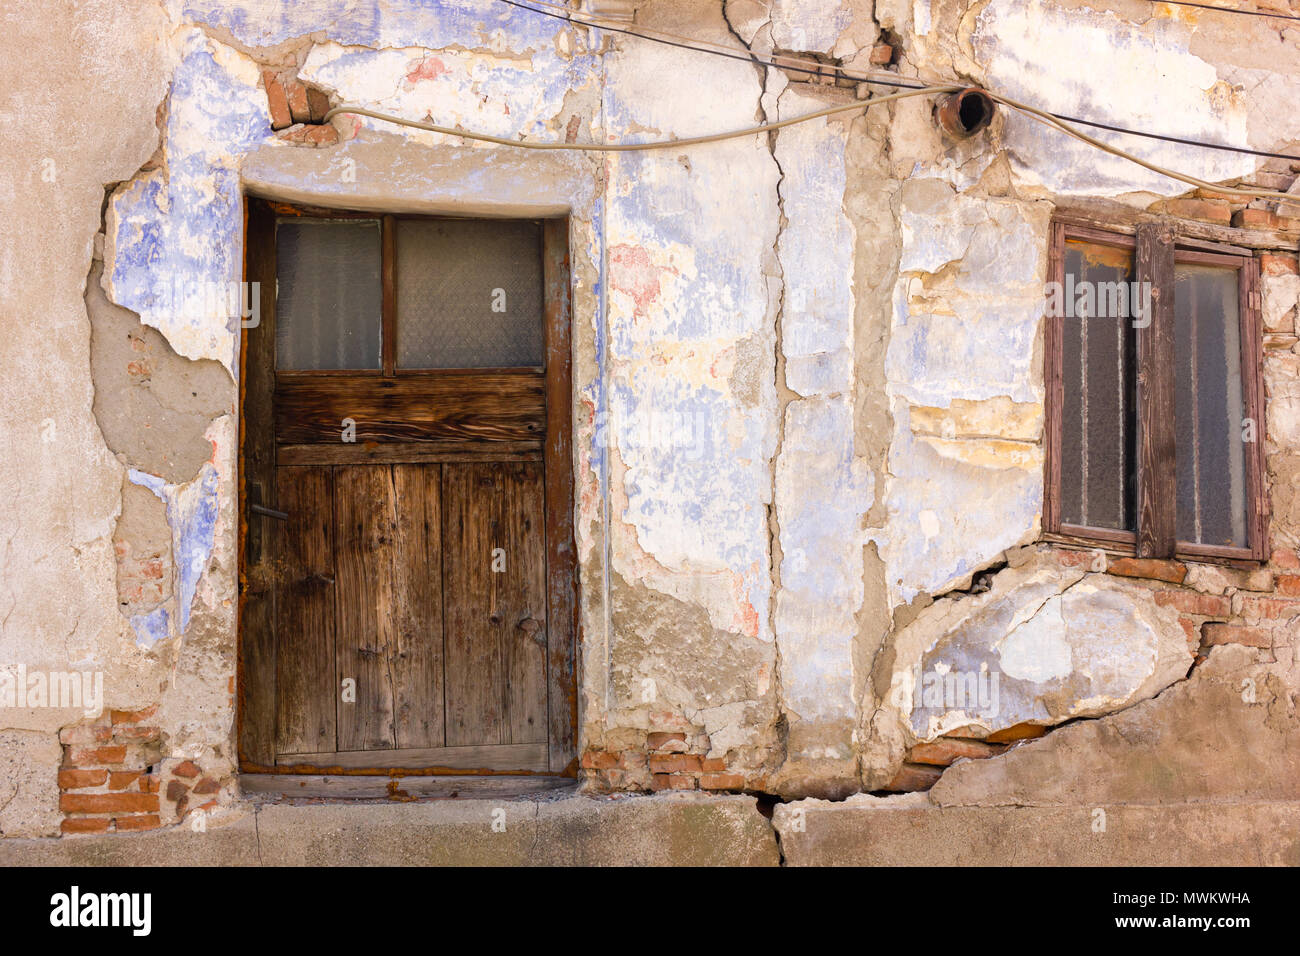 Window and door in the Old Bazaar area of Skopje, Macedonia Stock Photo